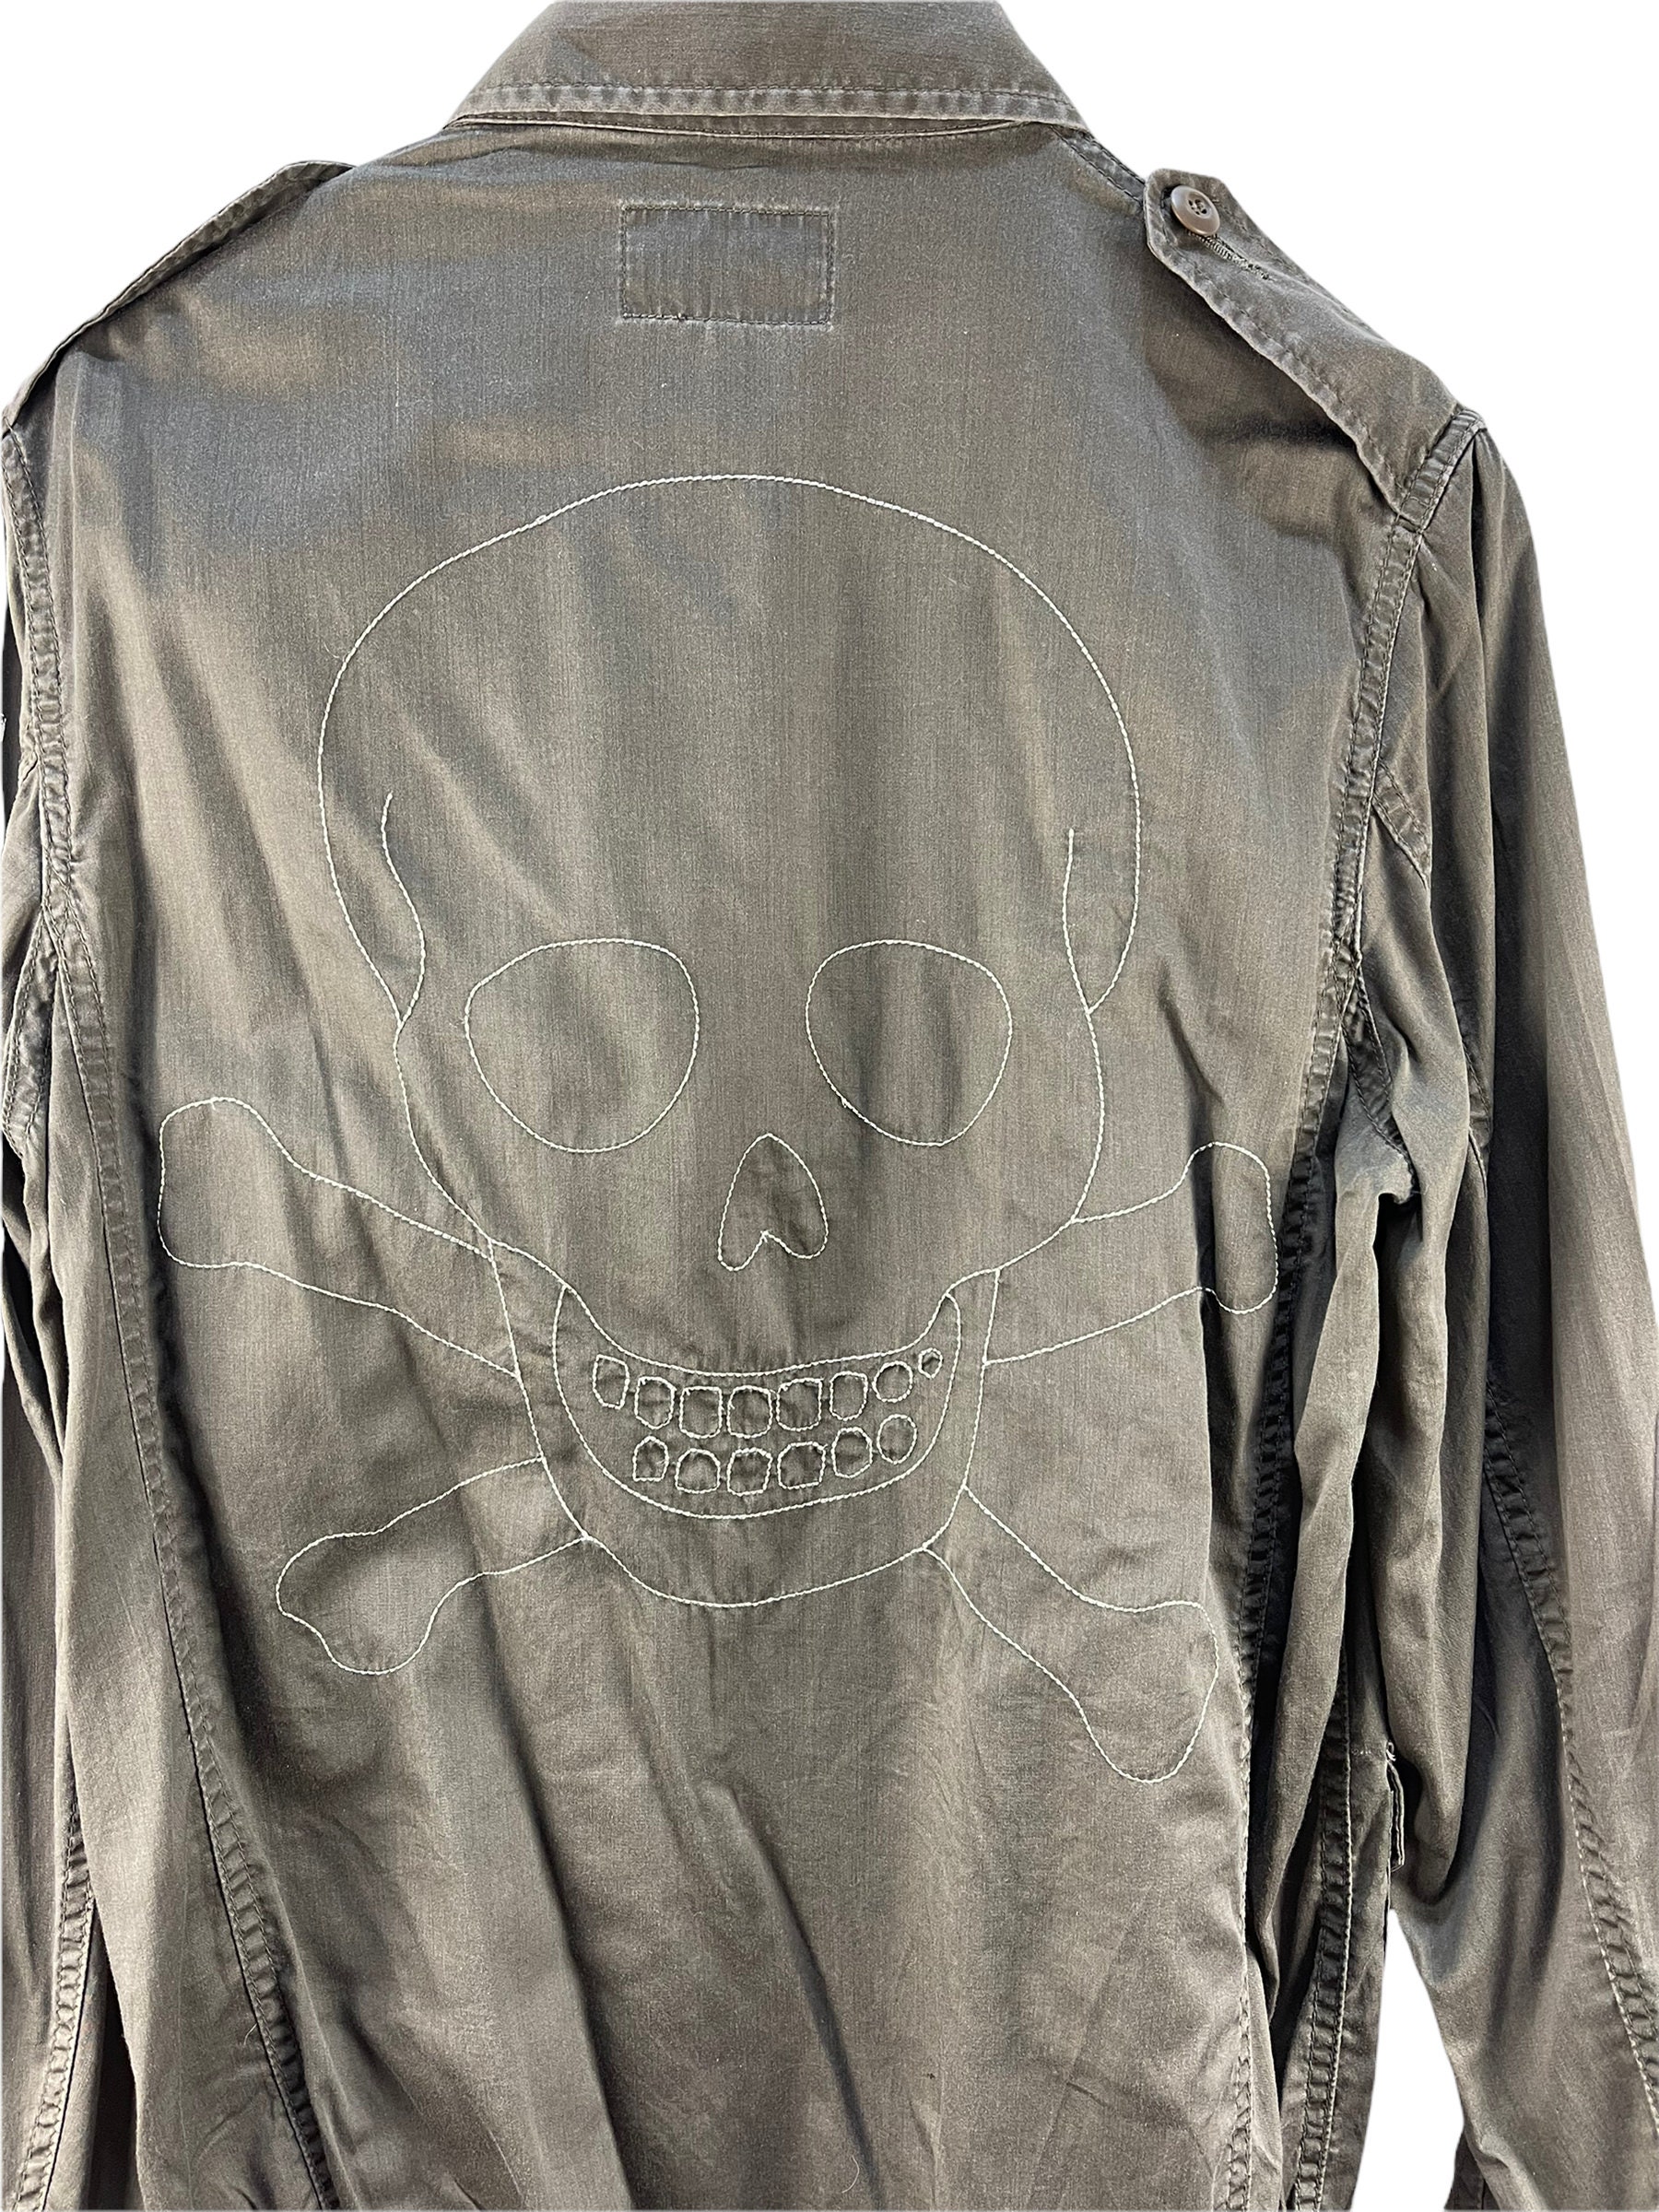 Vintage PPFM Skull Jacket - Etsy 日本